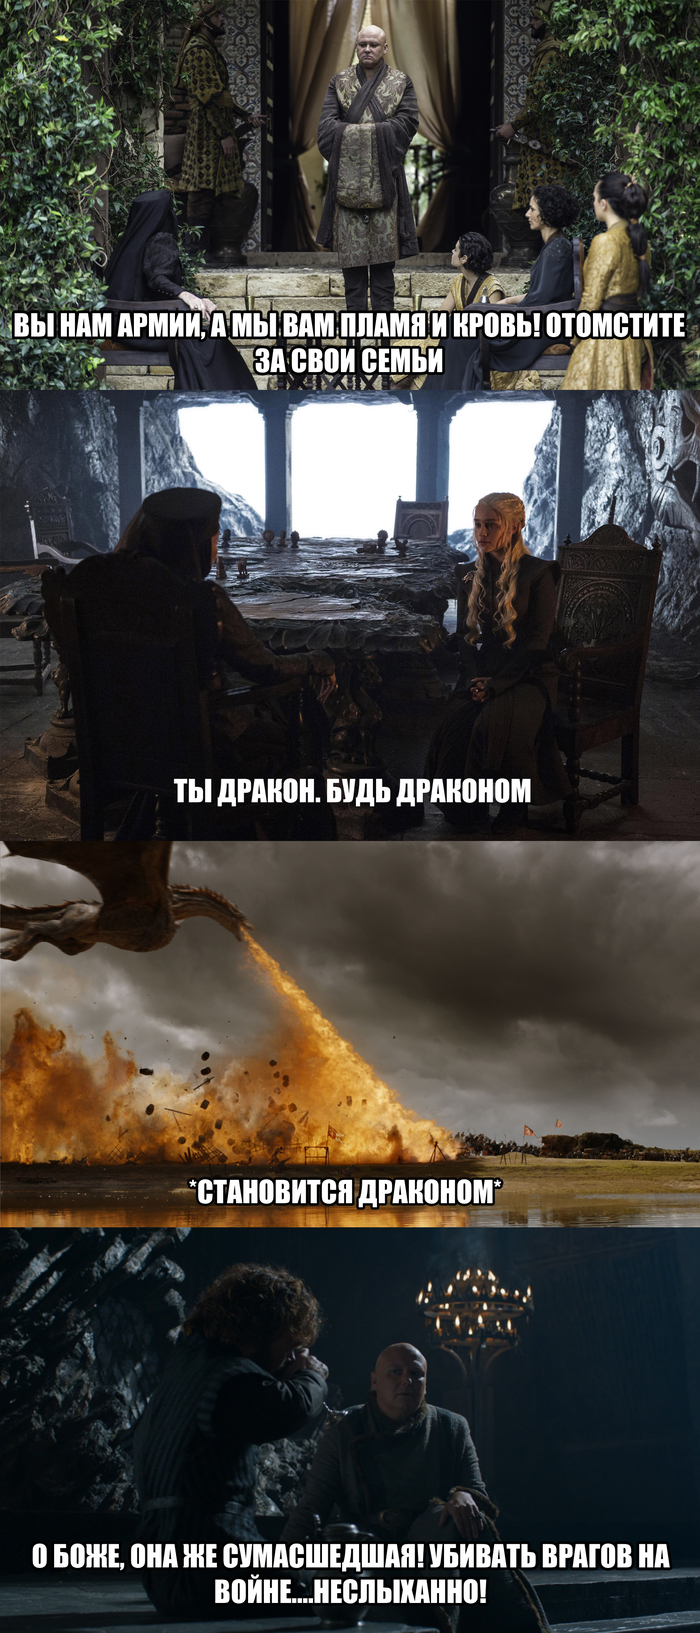 Who kills enemies in war? - My, Game of Thrones, Game of Thrones Season 7, Daenerys Targaryen, Varys, Longpost